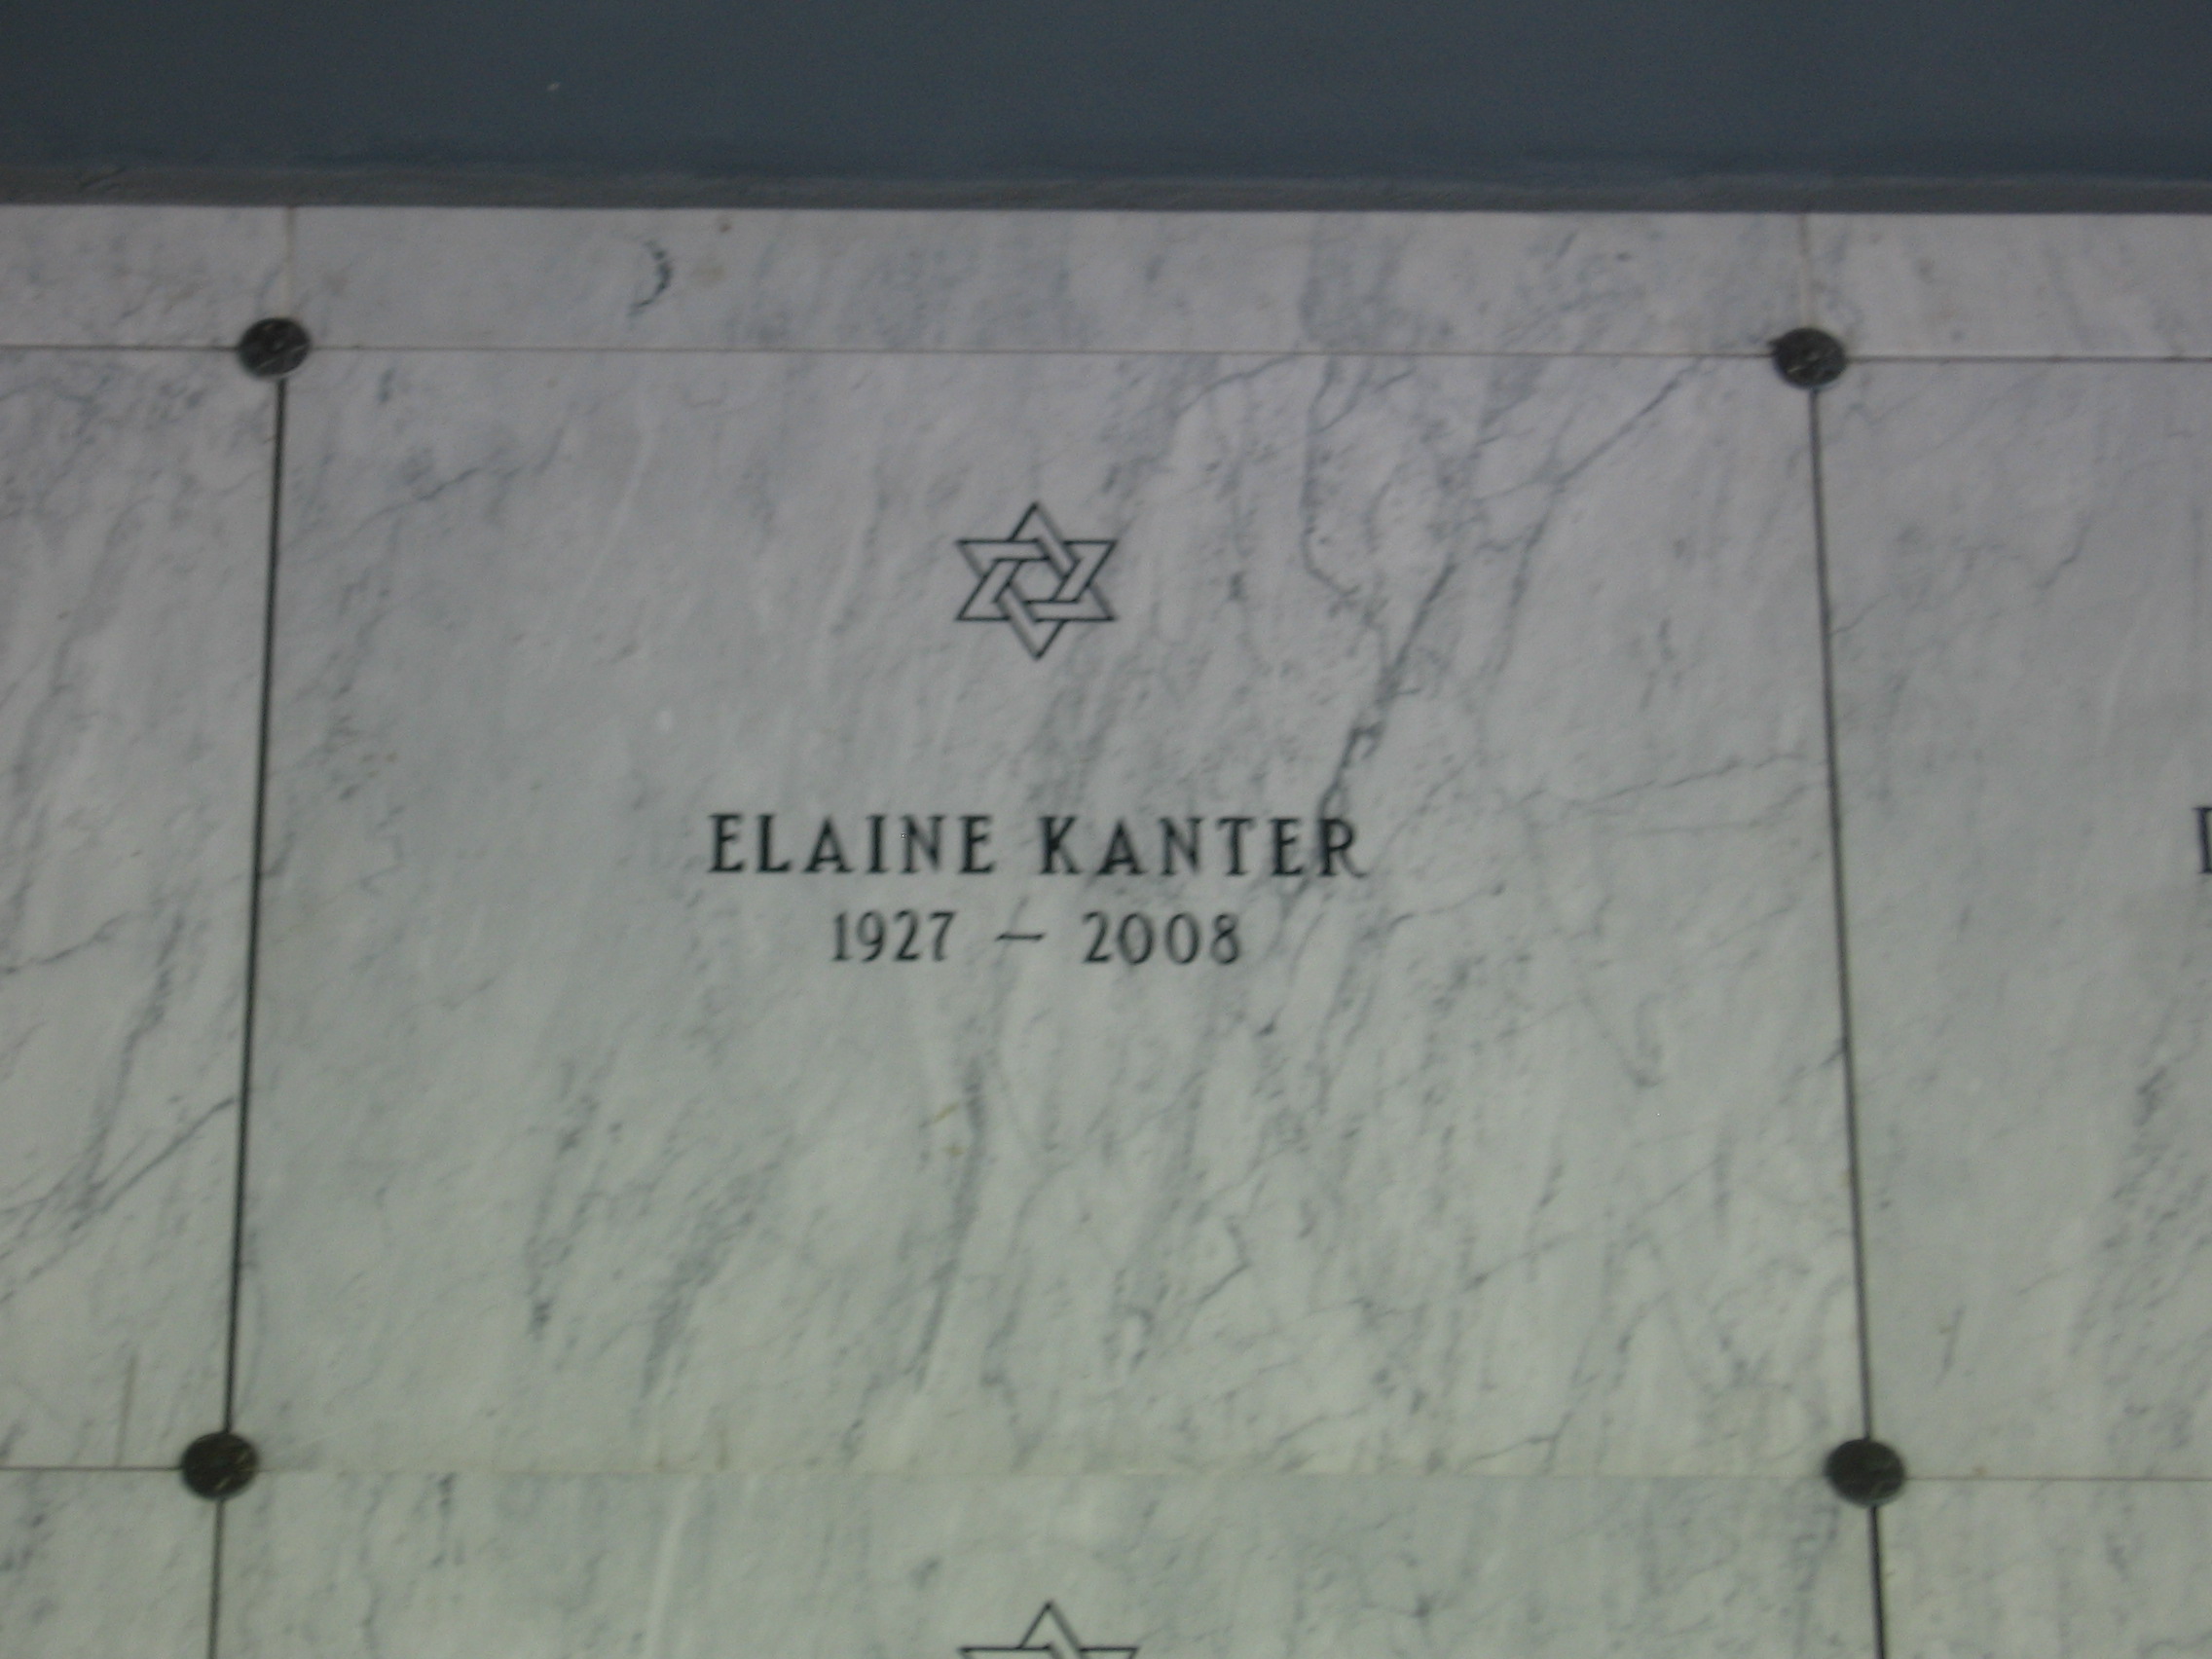 Elaine Kanter